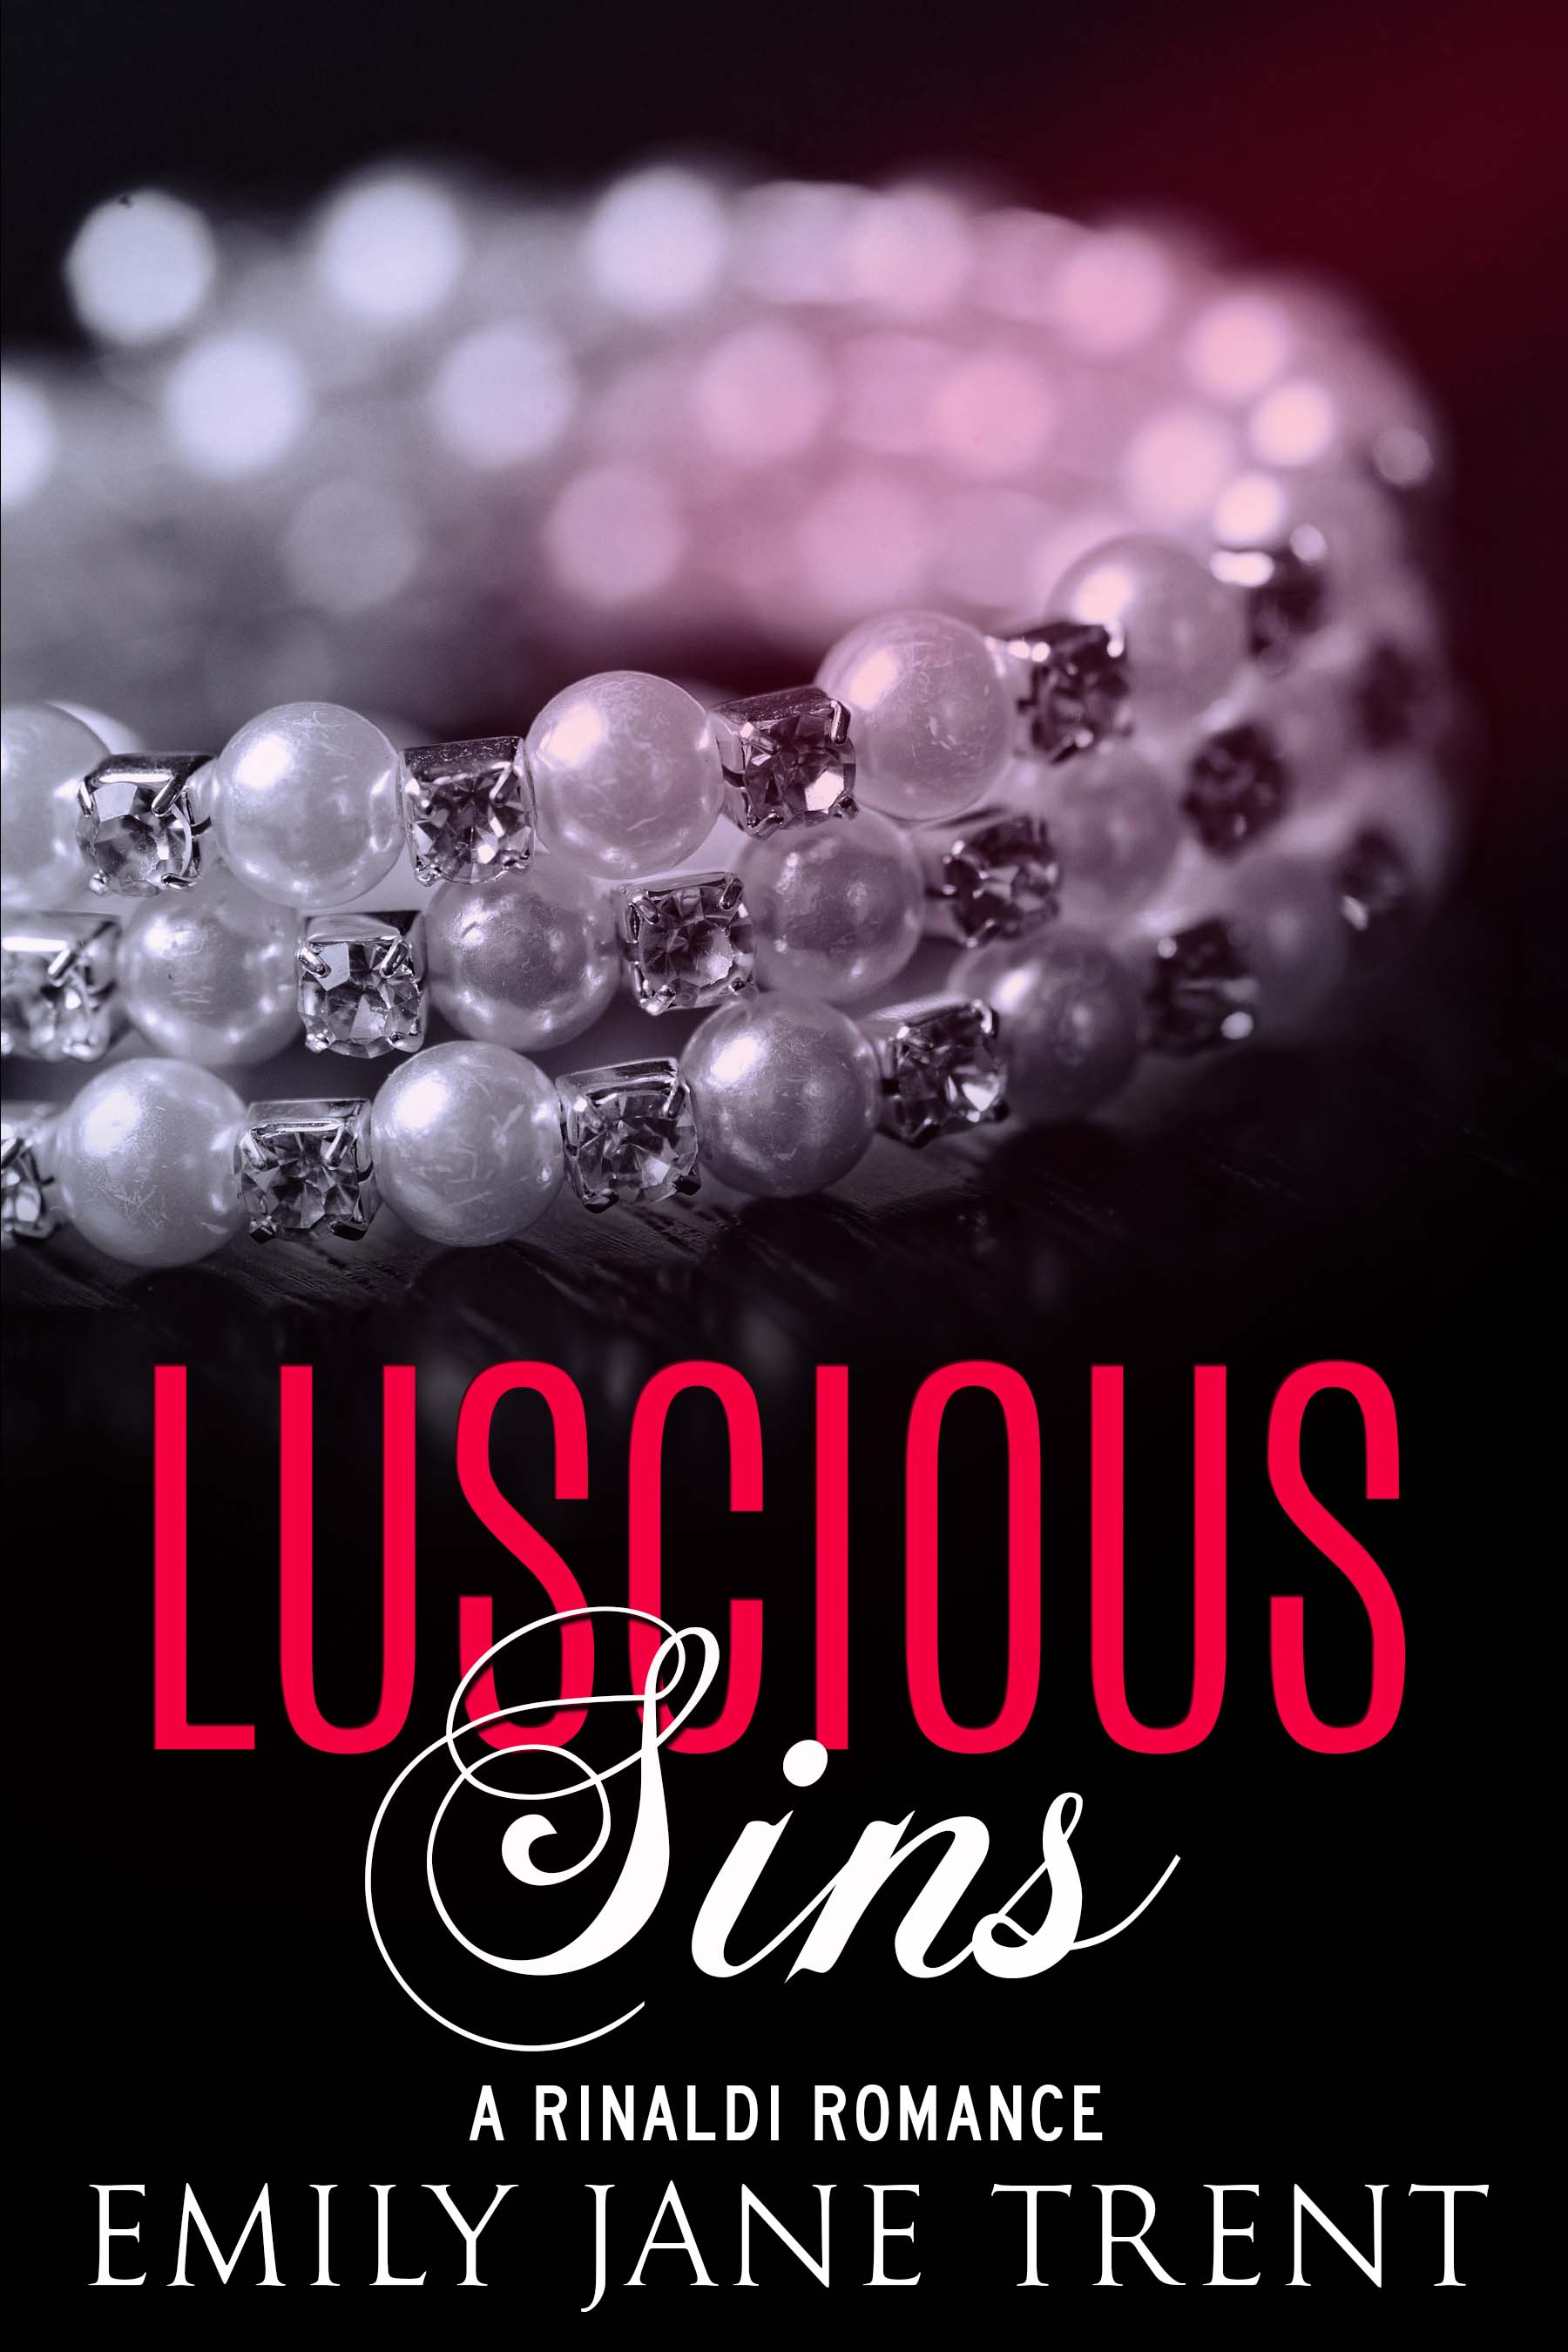 Luscious Sins